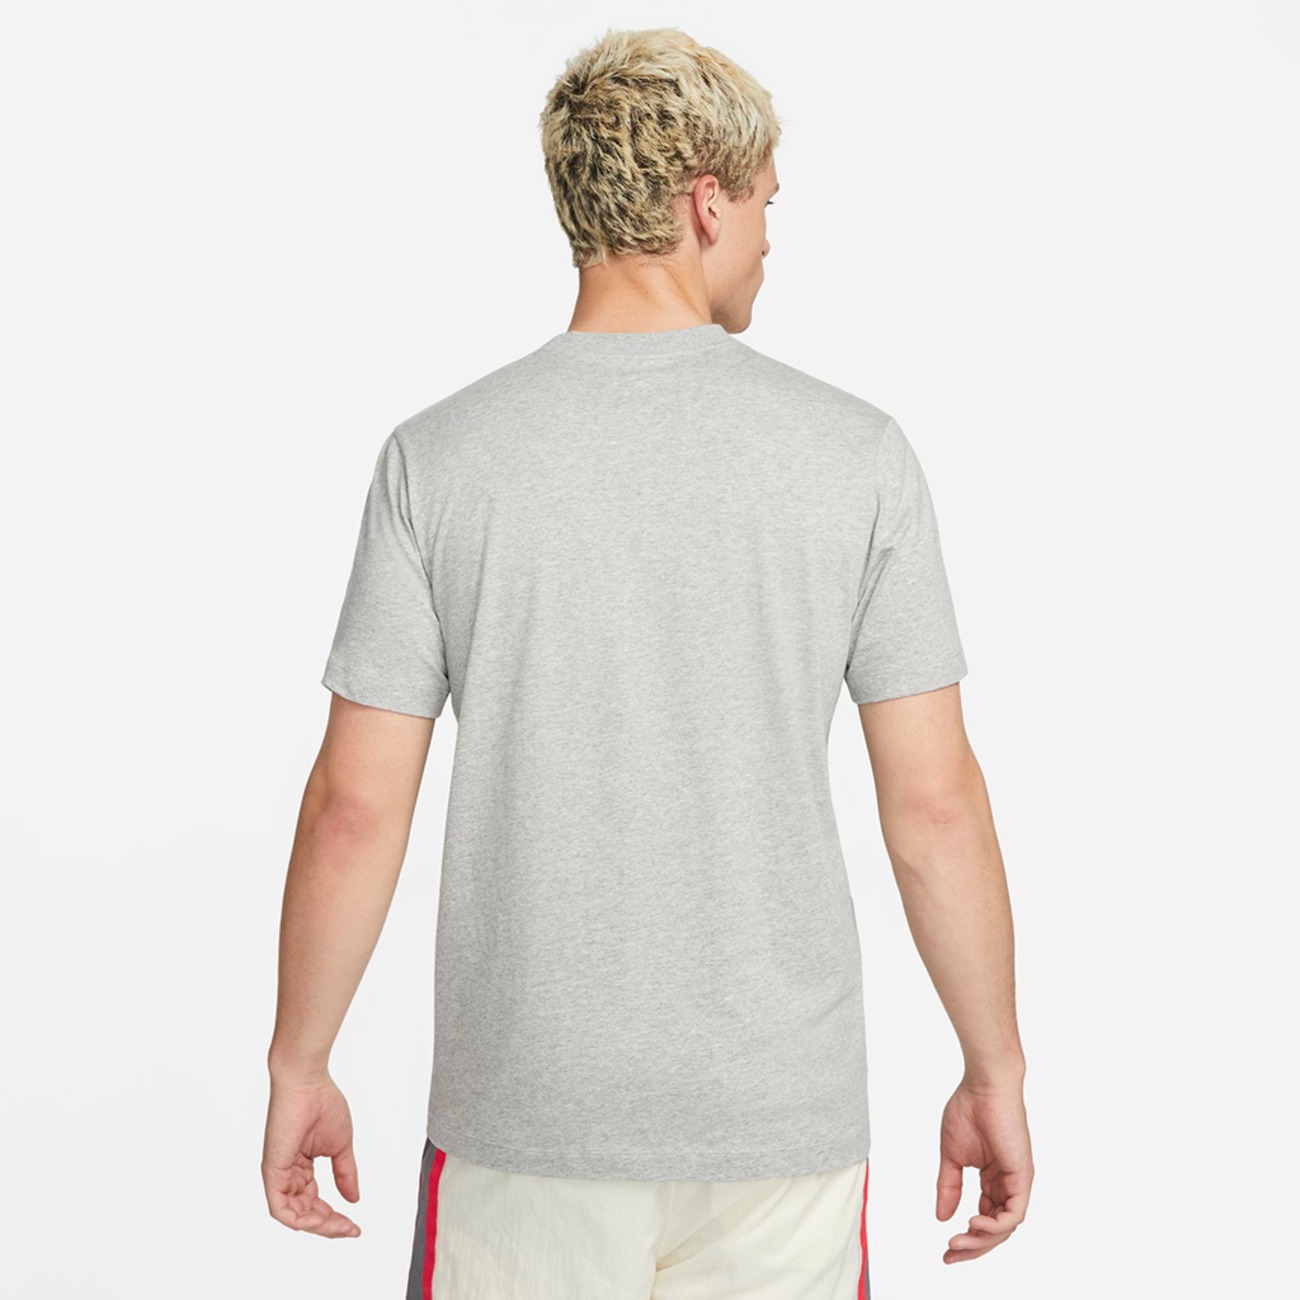 Camiseta Nike Sportswear Swoosh League Masculina - Foto 2